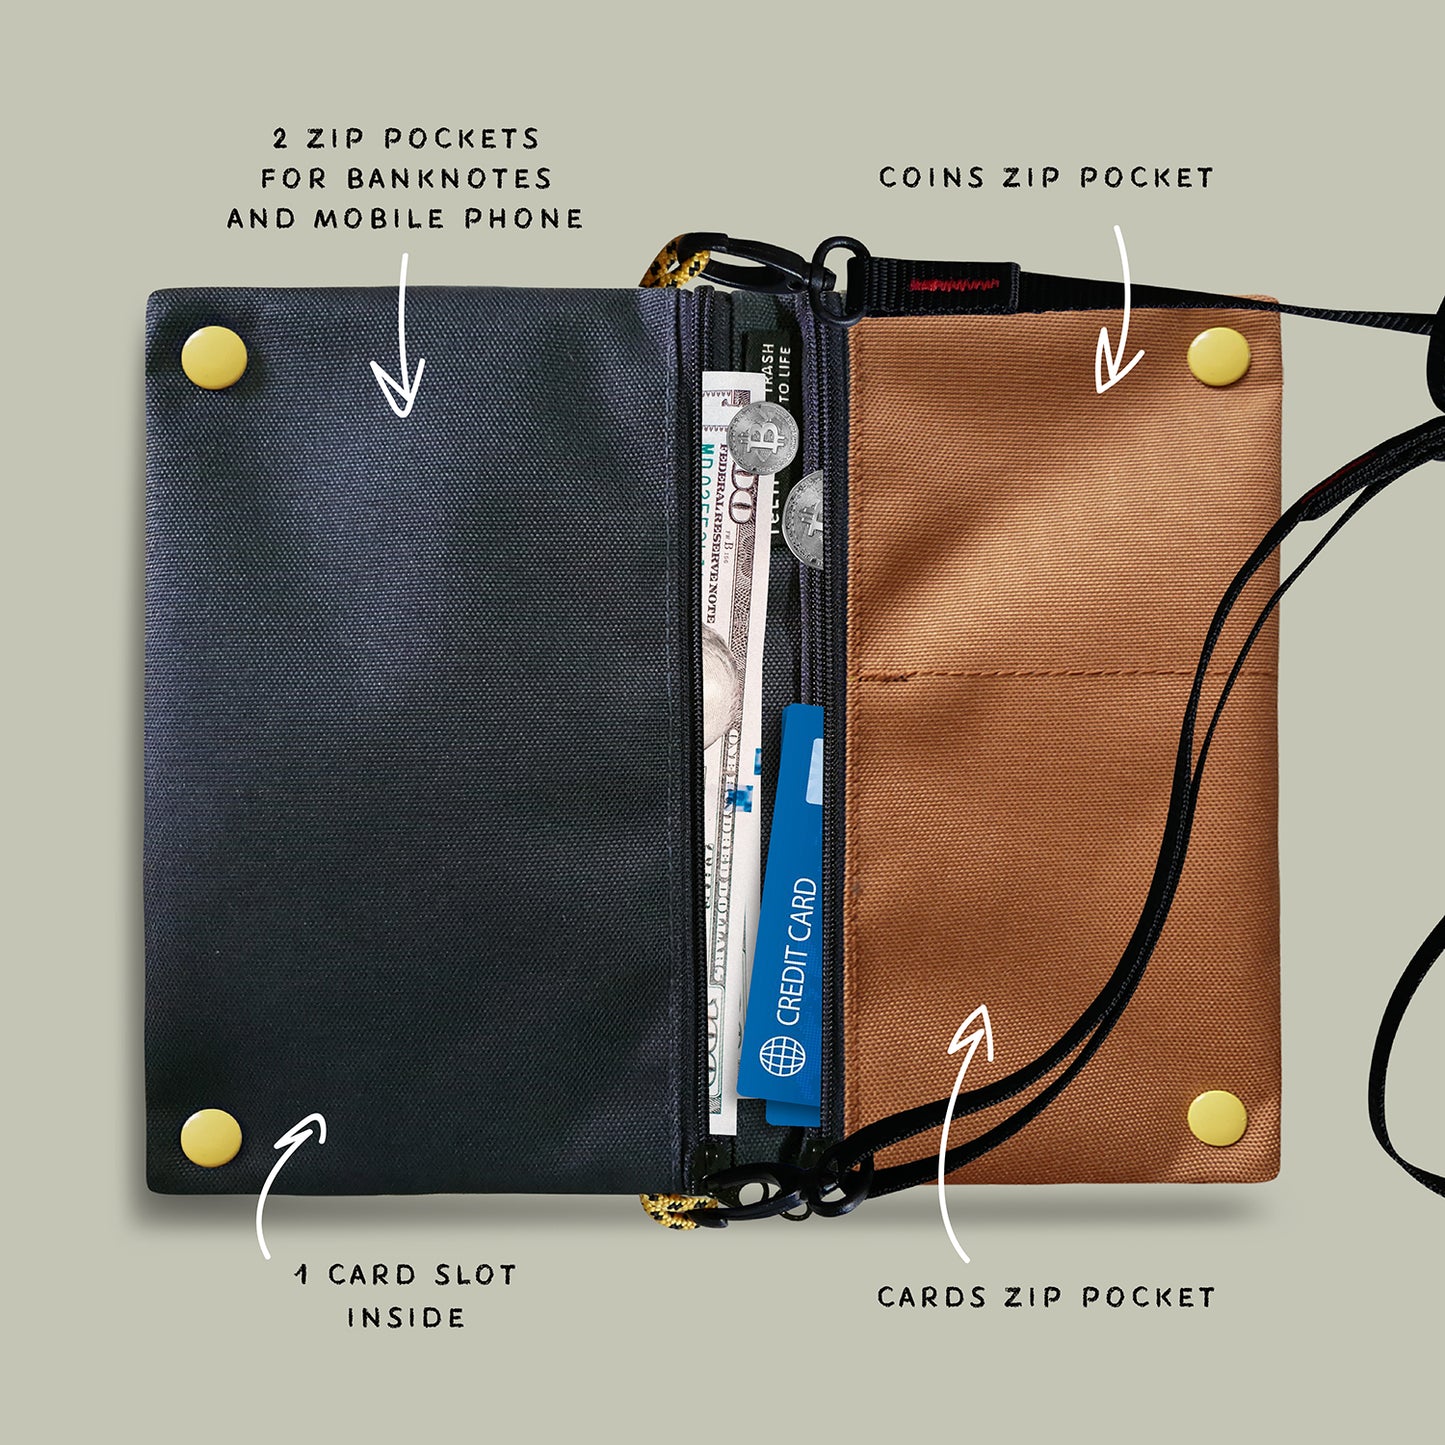 Hopper relife ocean sling bag